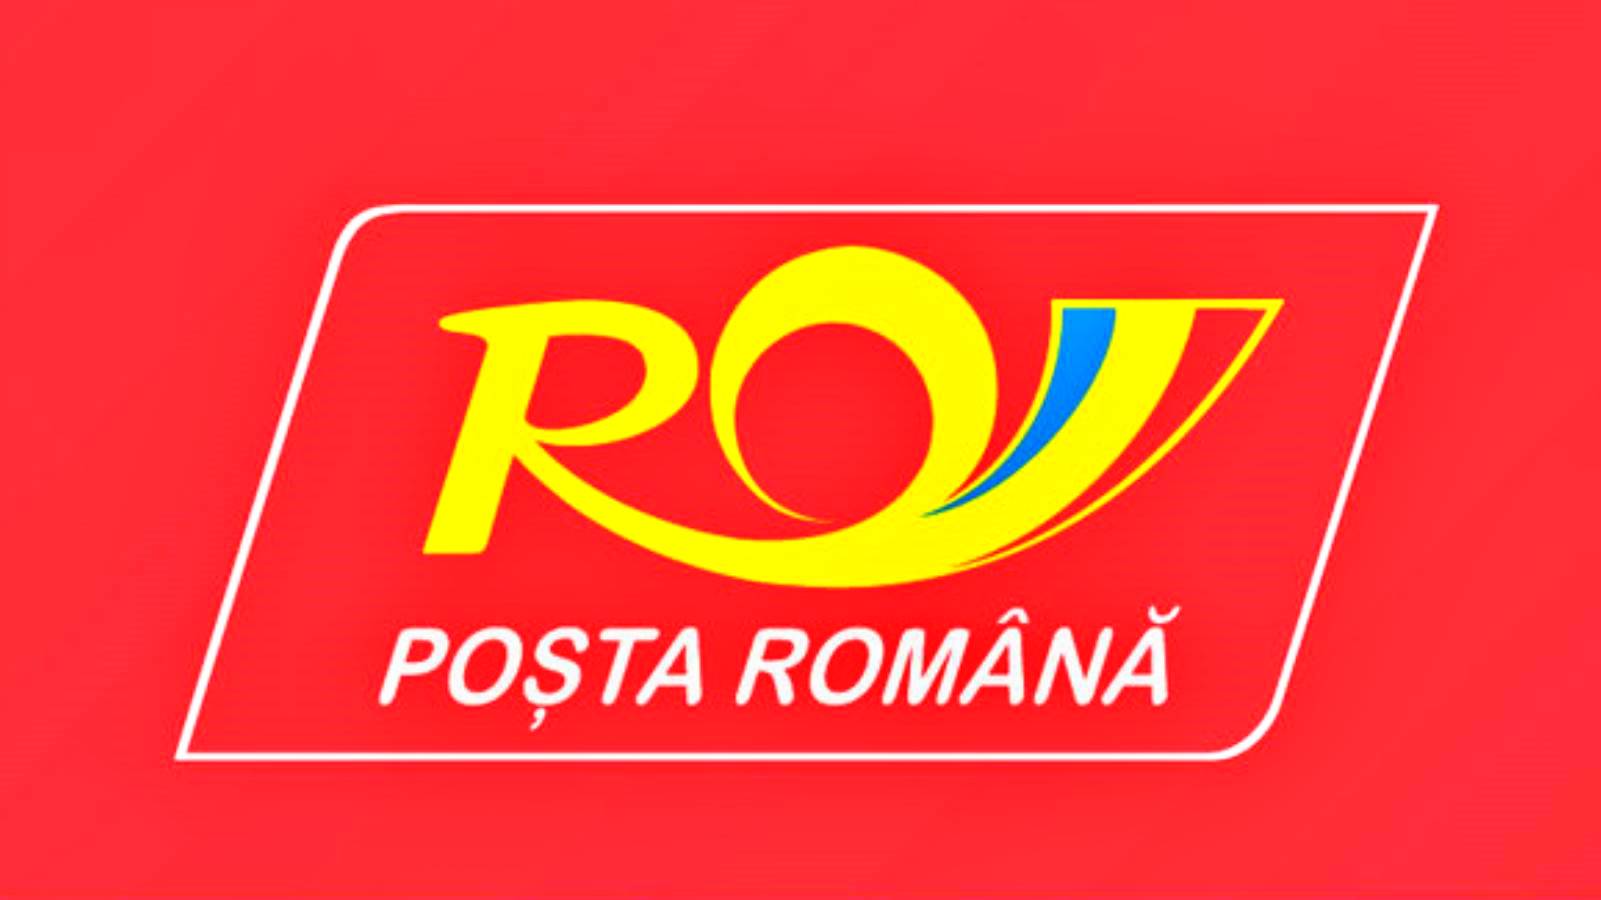 Ogłoszono rumuński program świąteczny i noworoczny